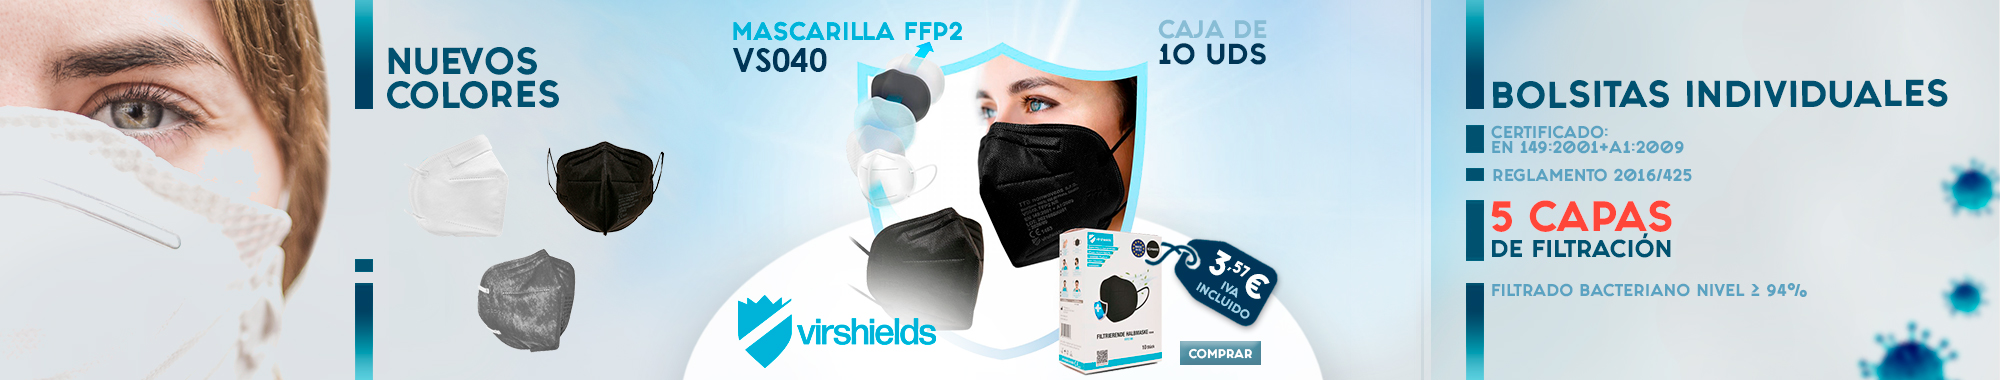 Mascarilla FFP2 VS040